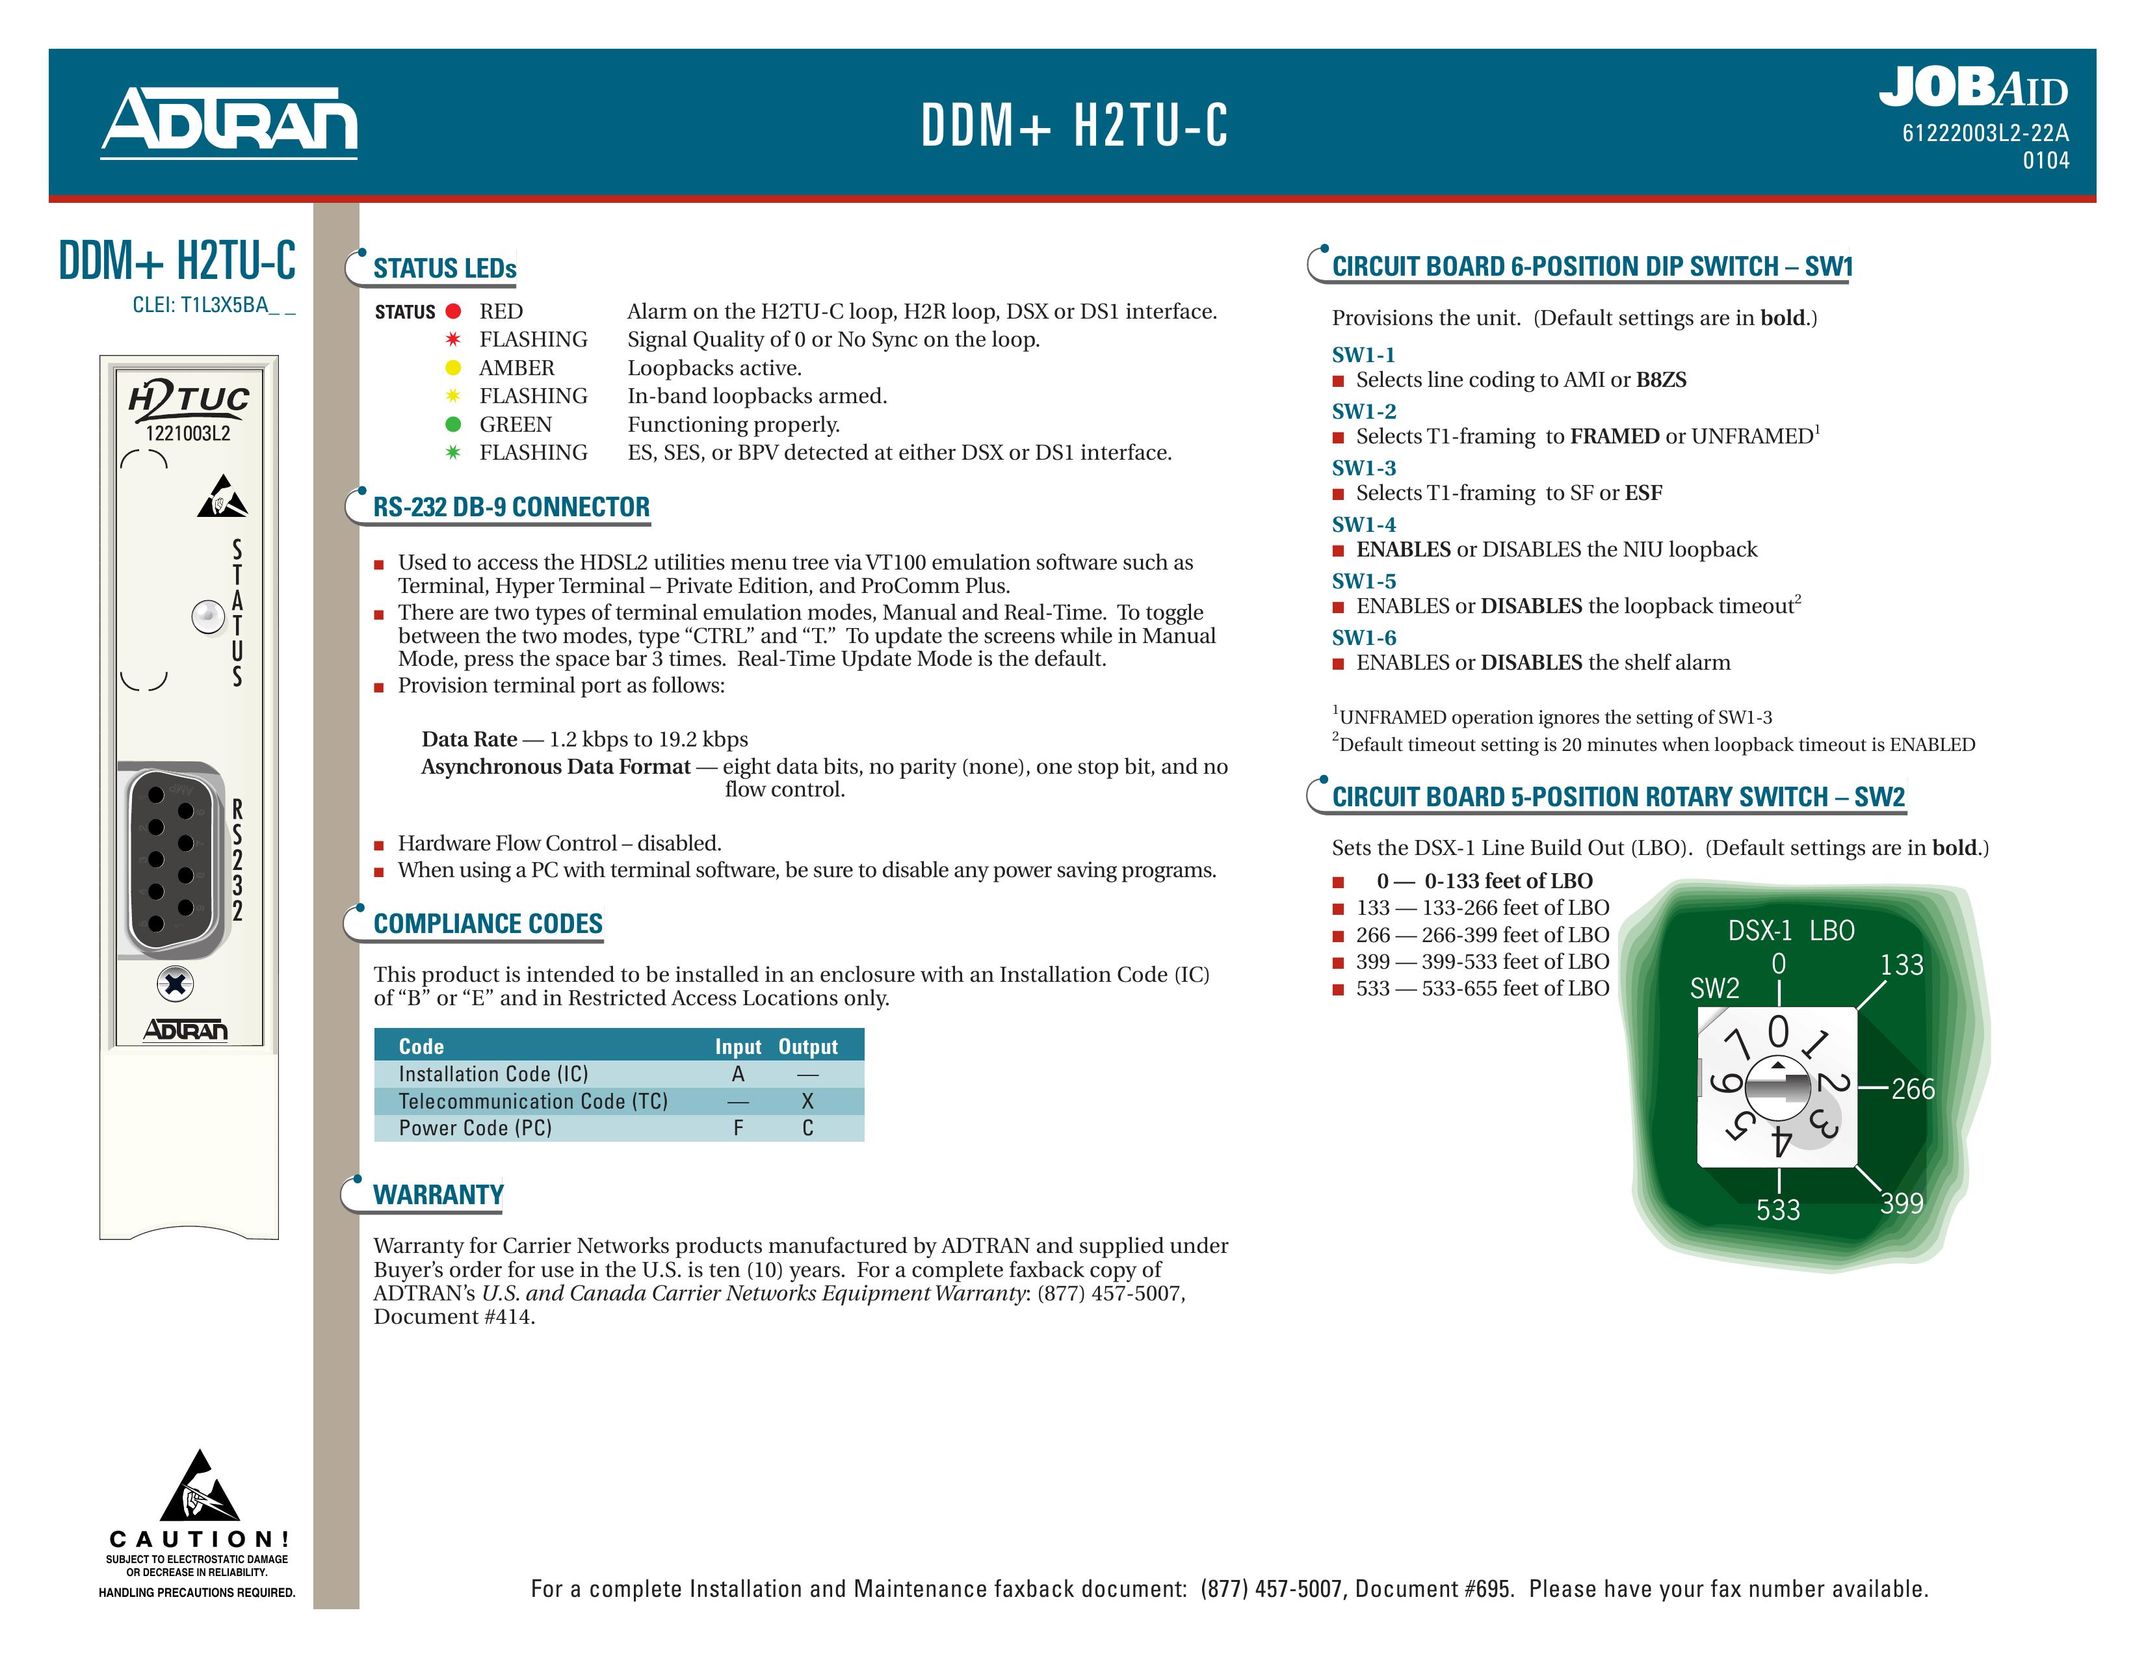 ADTRAN DDM + H2TU-C Switch User Manual